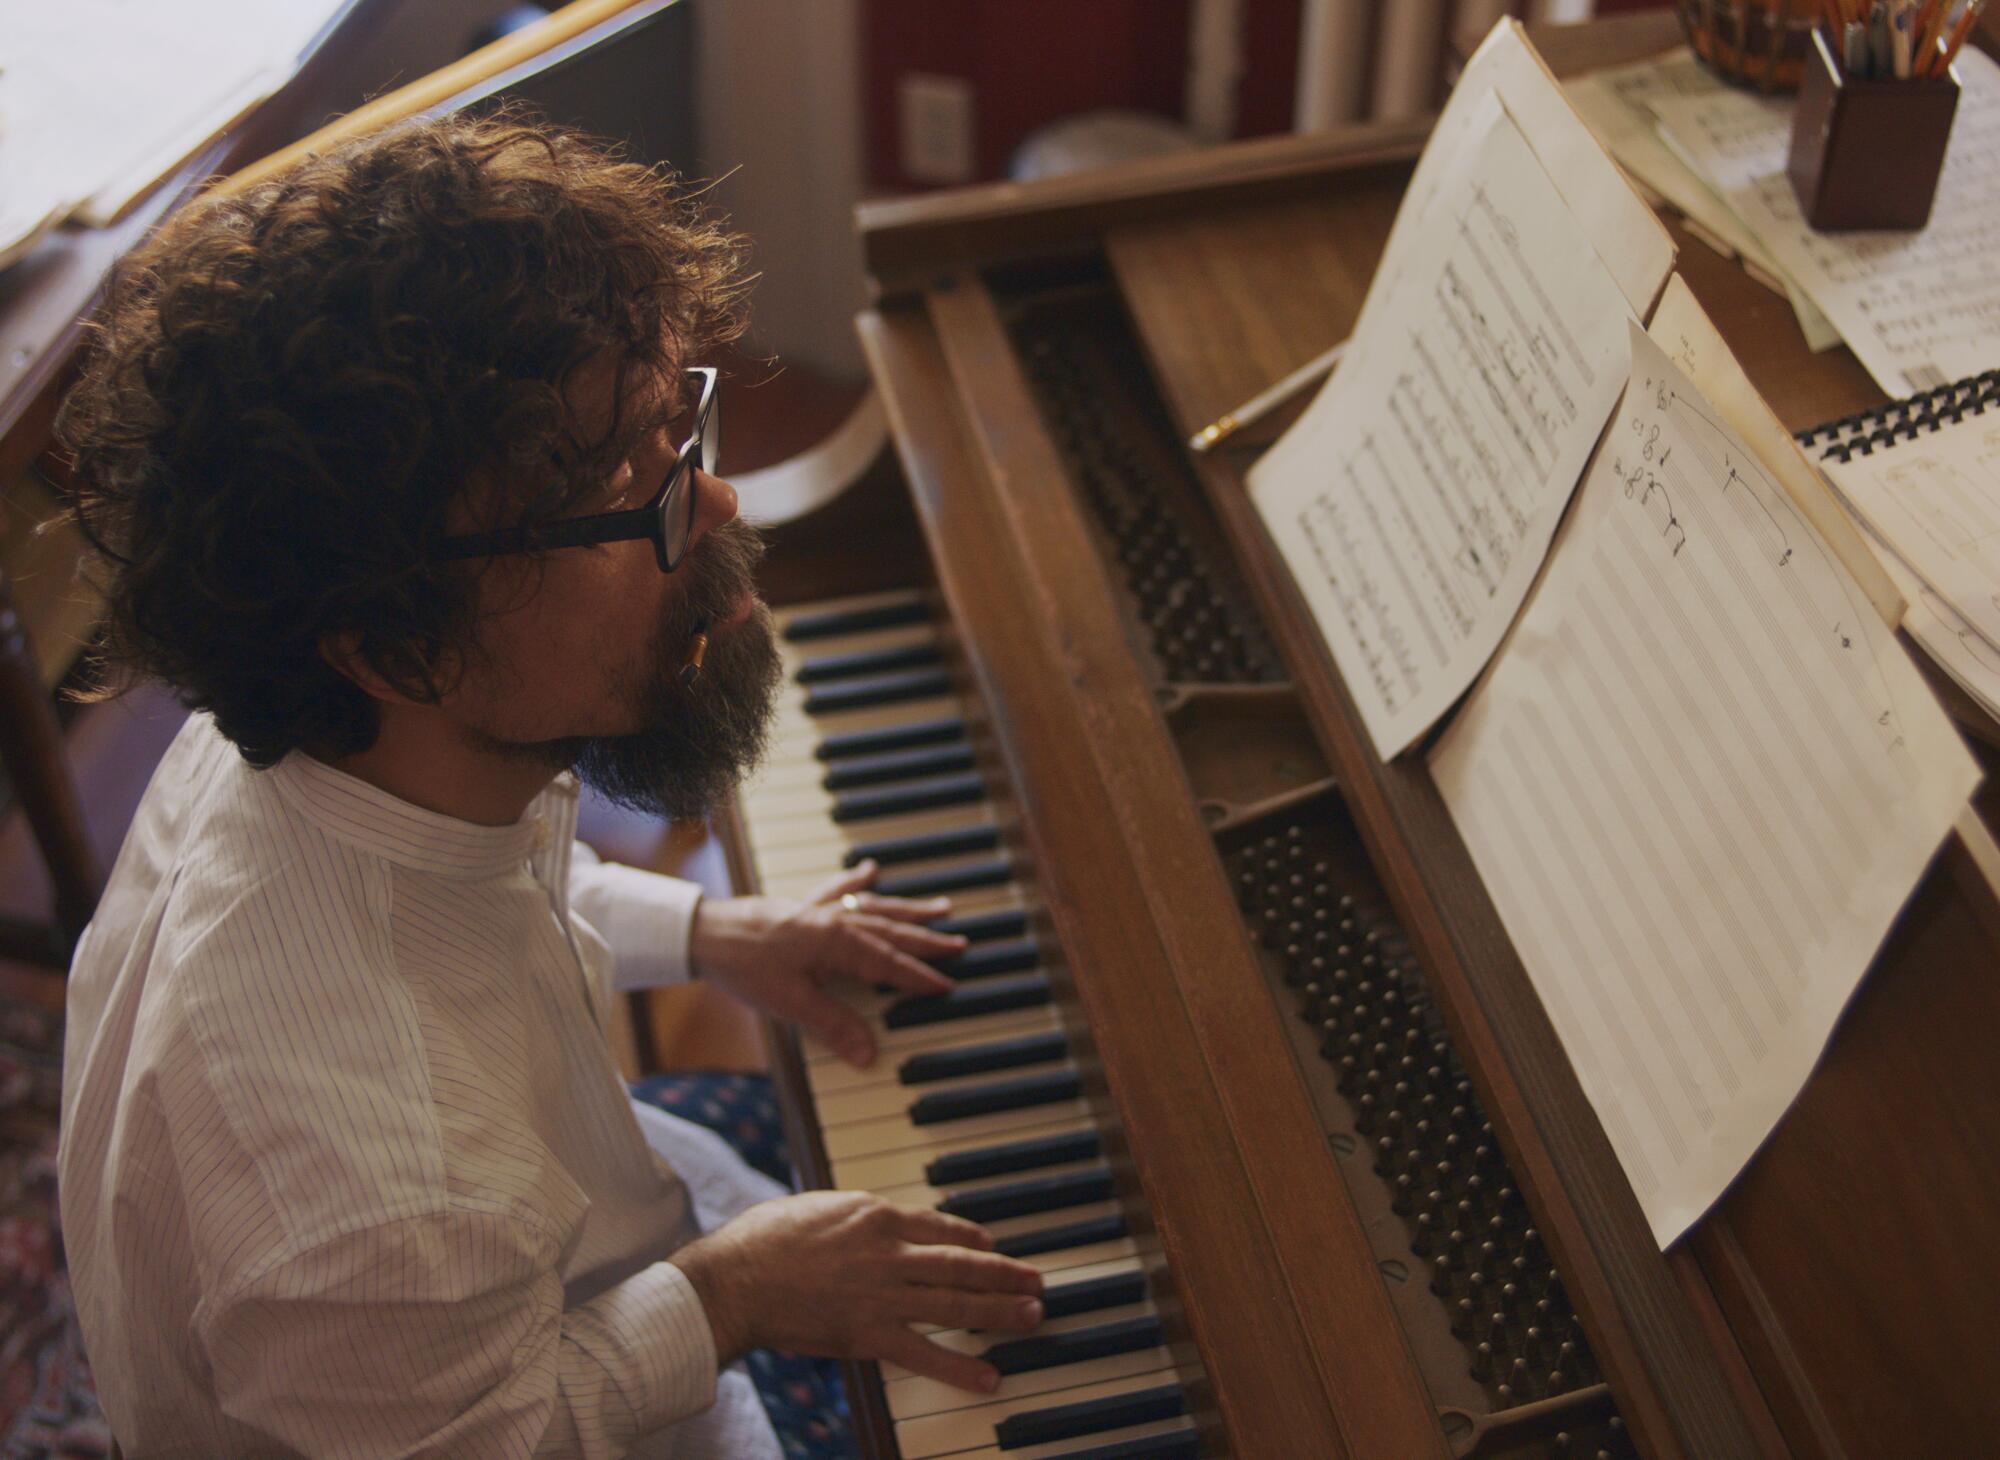 A bearded man plays piano.